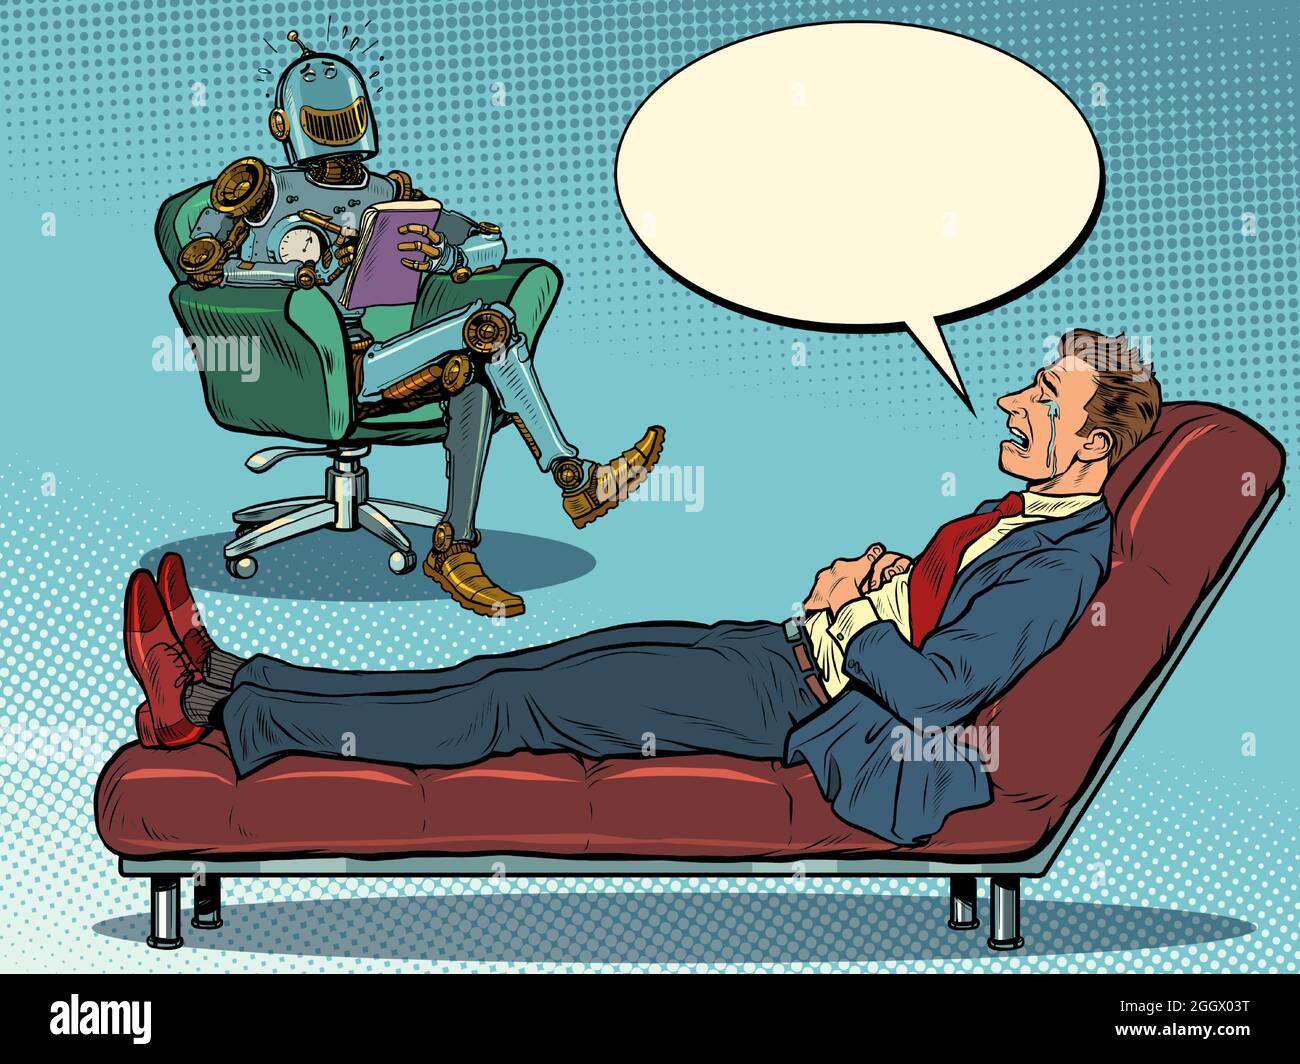 Un robot psychothérapeute lors d'une séance de psychothérapie avec un patient, rit et écoute un homme d'affaires, s'assoit dans une chaise et prend des notes dans un bloc-notes Illustration de Vecteur